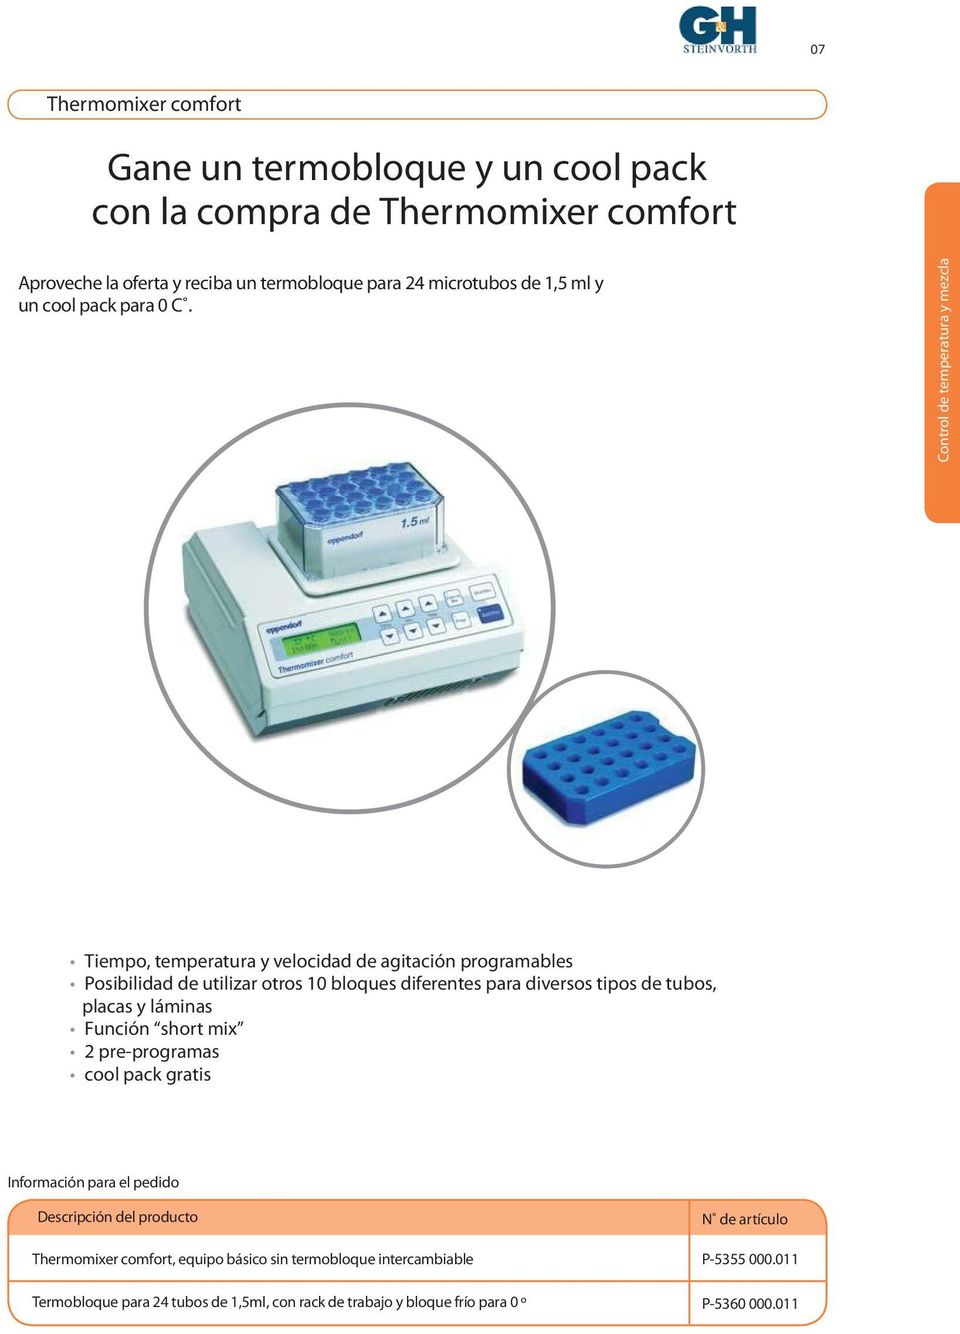 Control de temperatura y mezcla Tiempo, temperatura y velocidad de agitación programables Posibilidad de utilizar otros 10 bloques diferentes para